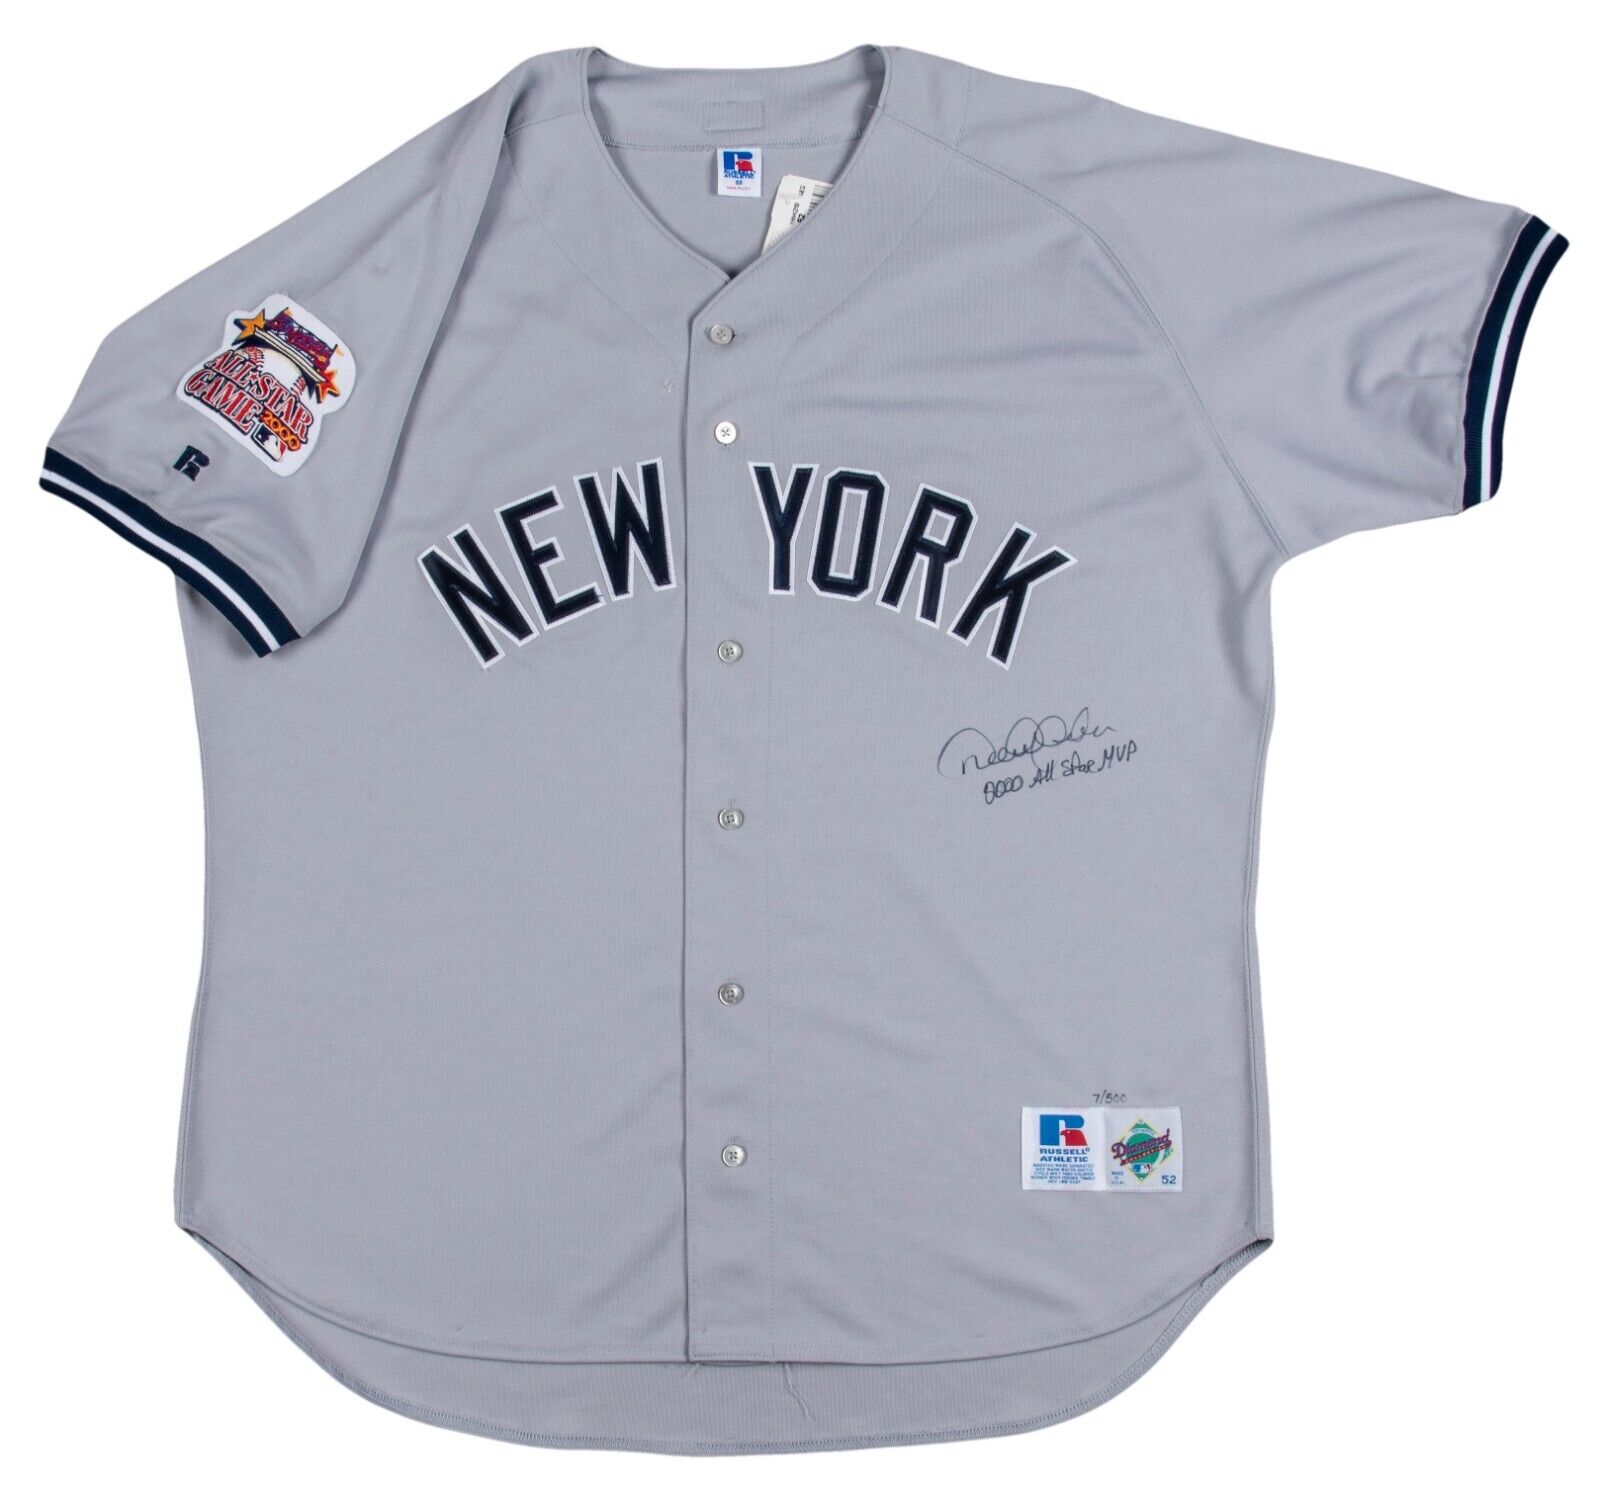 Derek Jeter Autographed New York Yankees Jersey Inscribed HOF